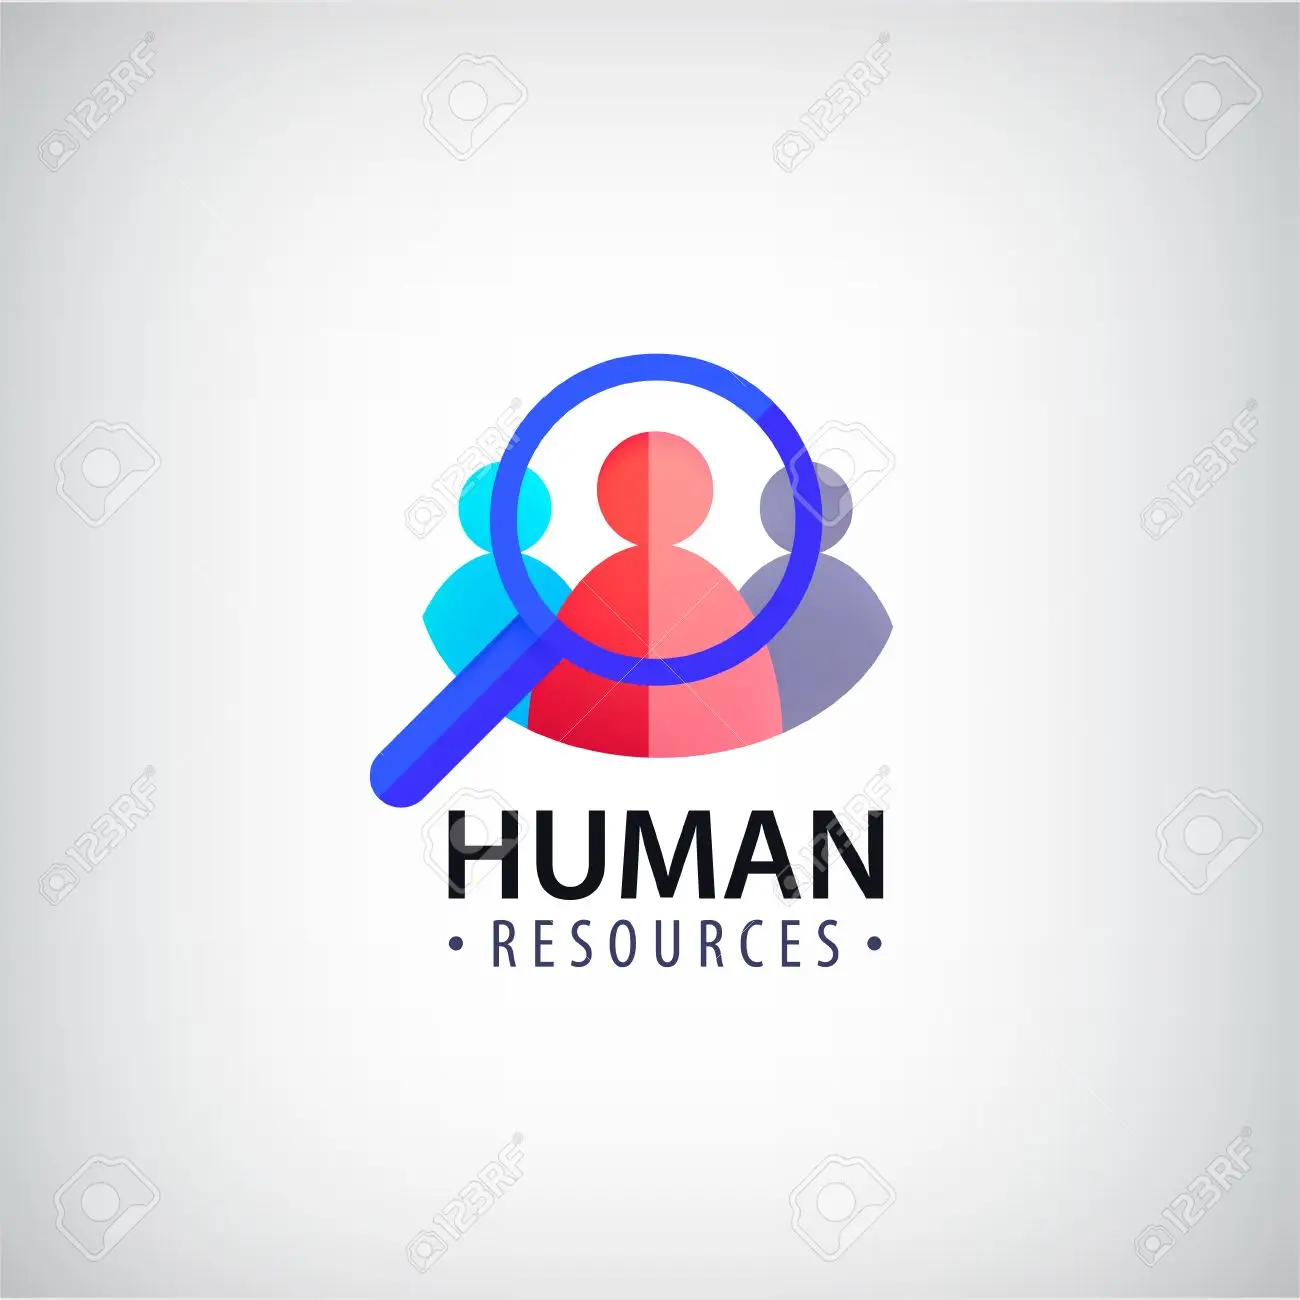 Resources humanizes